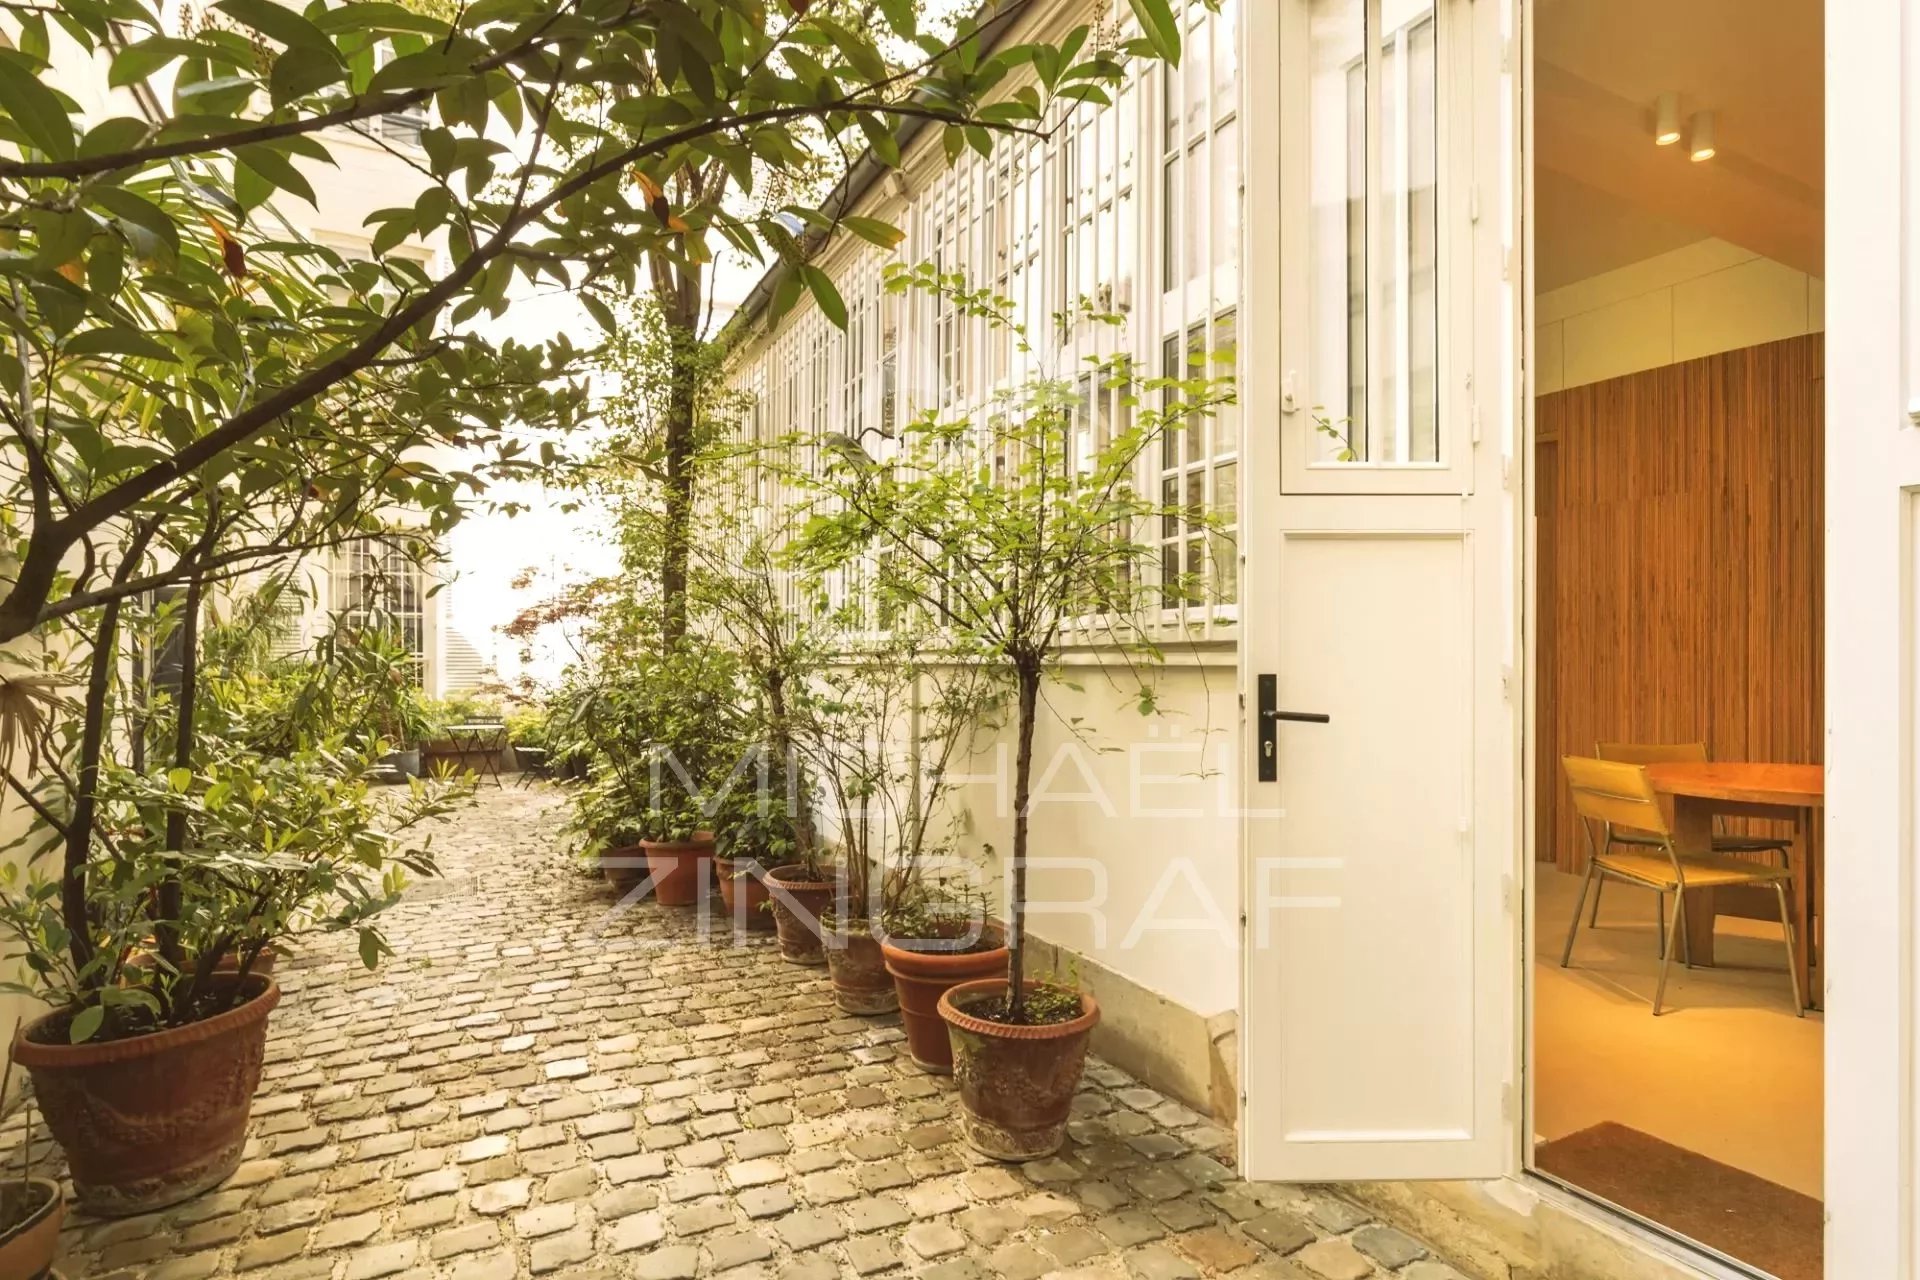 Exclusivité - A vendre - Appartement esprit maison - Atelier d'artiste - Rue de Verneuil